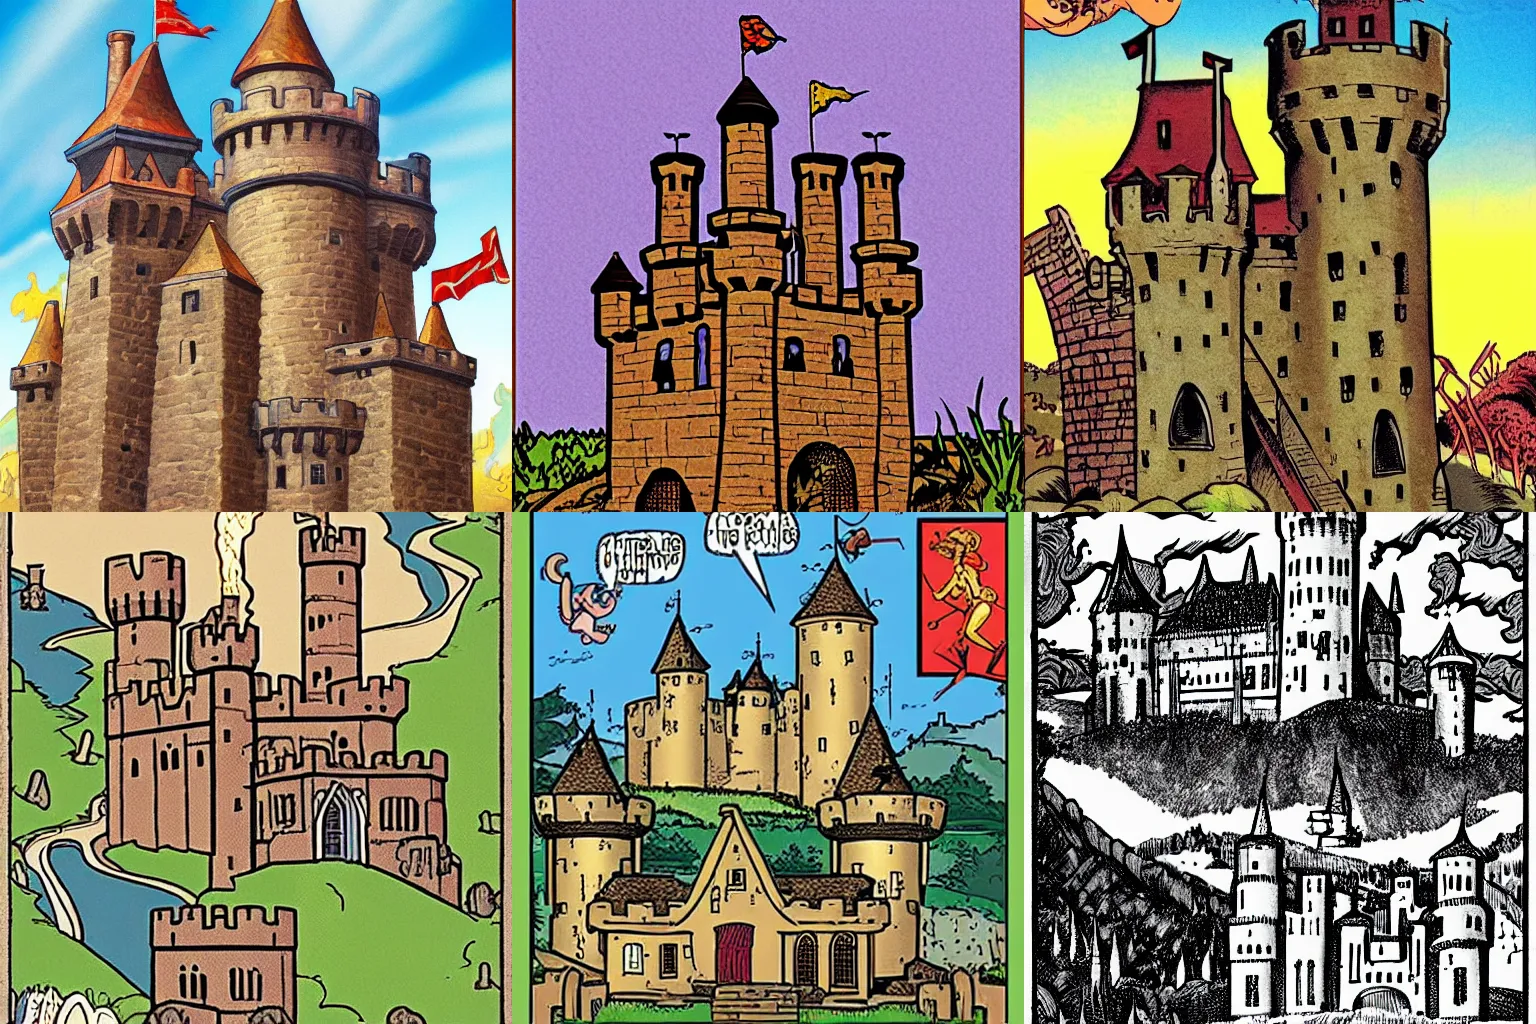 Prompt: medieval castle, by Archie Comics